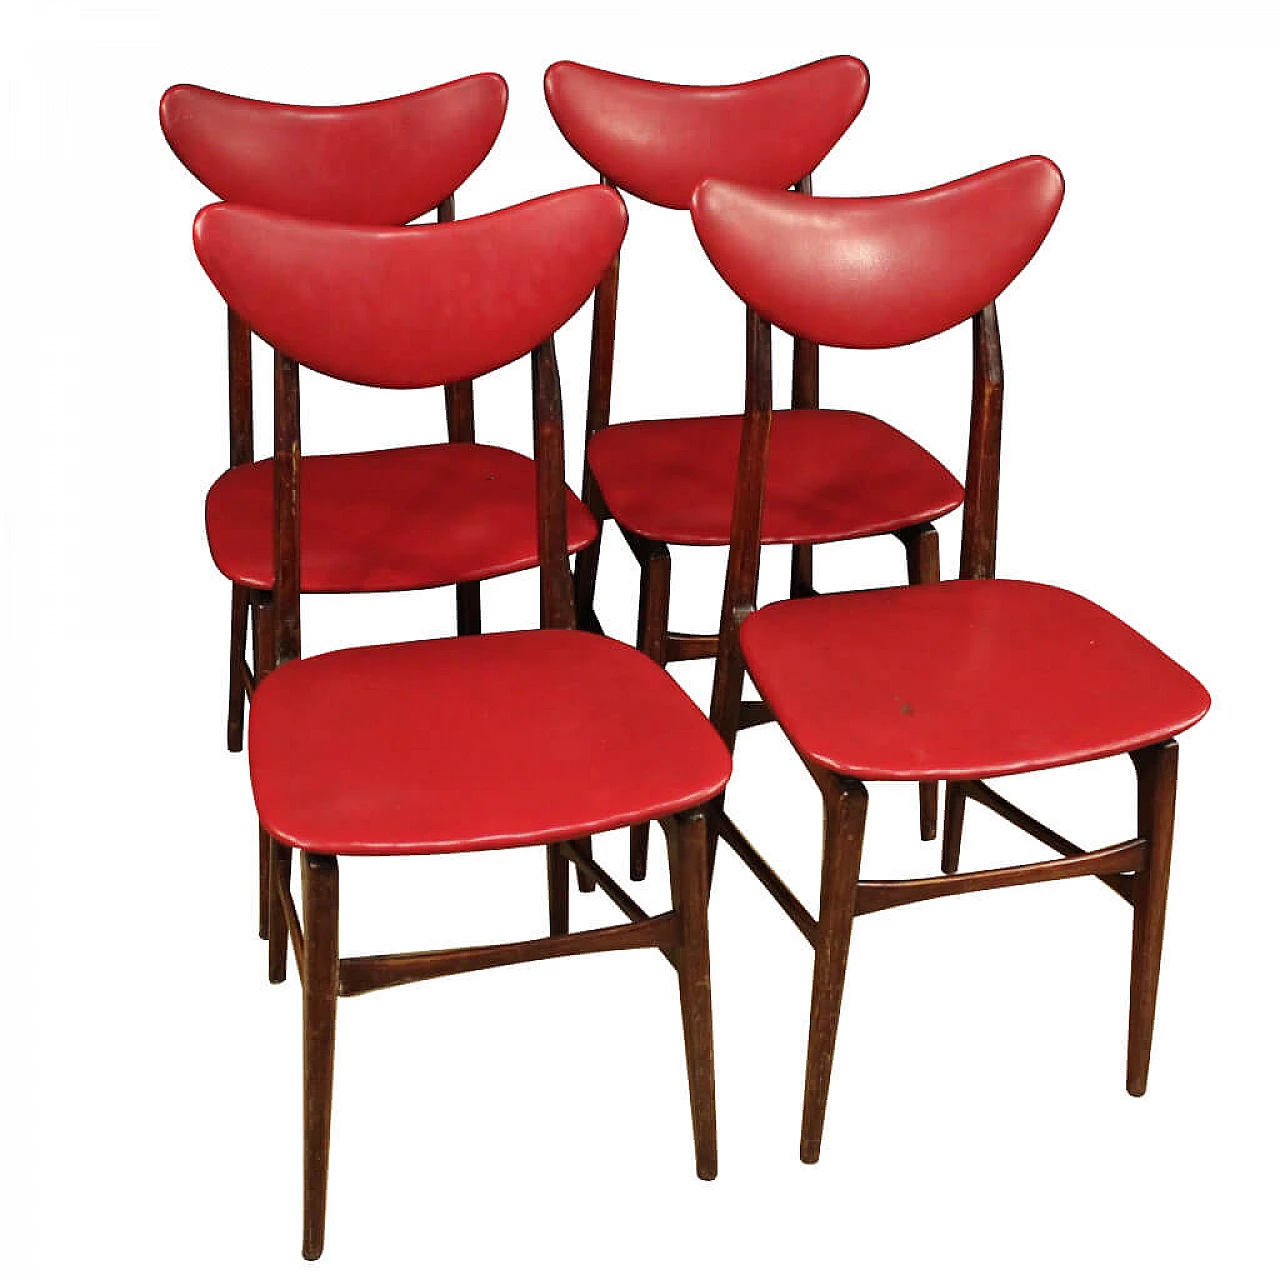 4 sedie in legno e skai rosso, anni '70 1107270